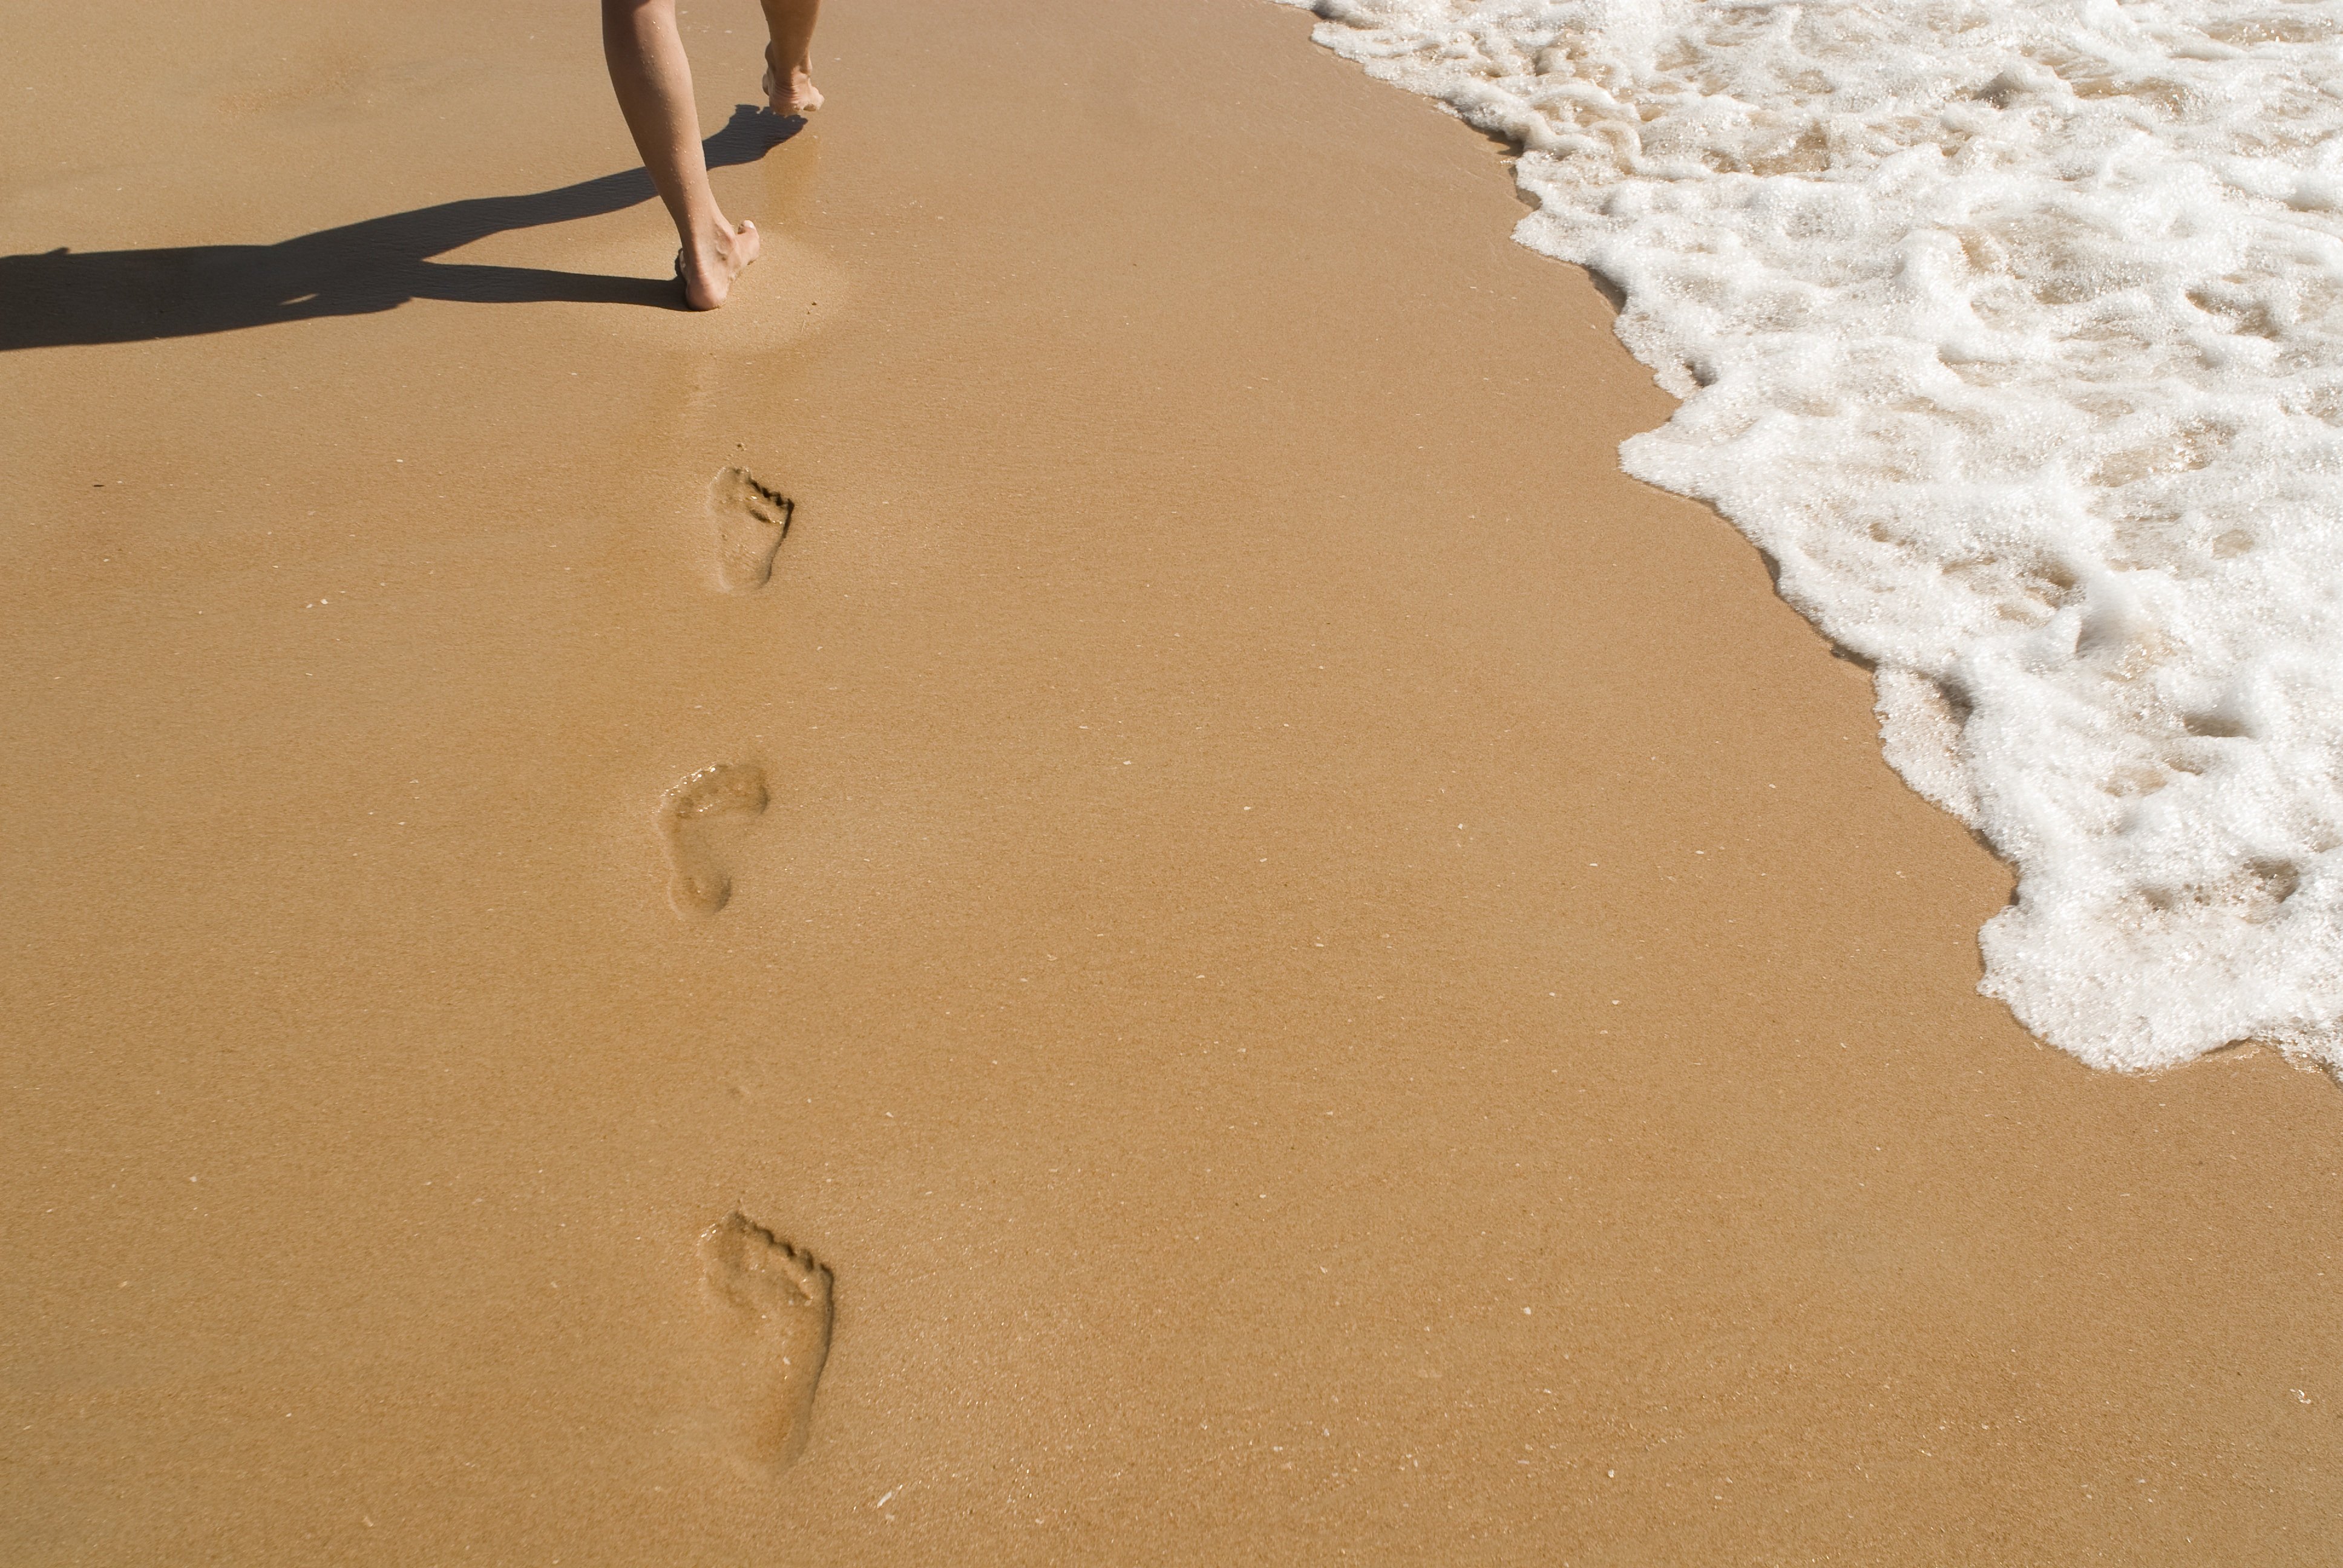 На песке остается след. Следы на песке. Следы человека на песке. Пляж песок. След стопы на песке.